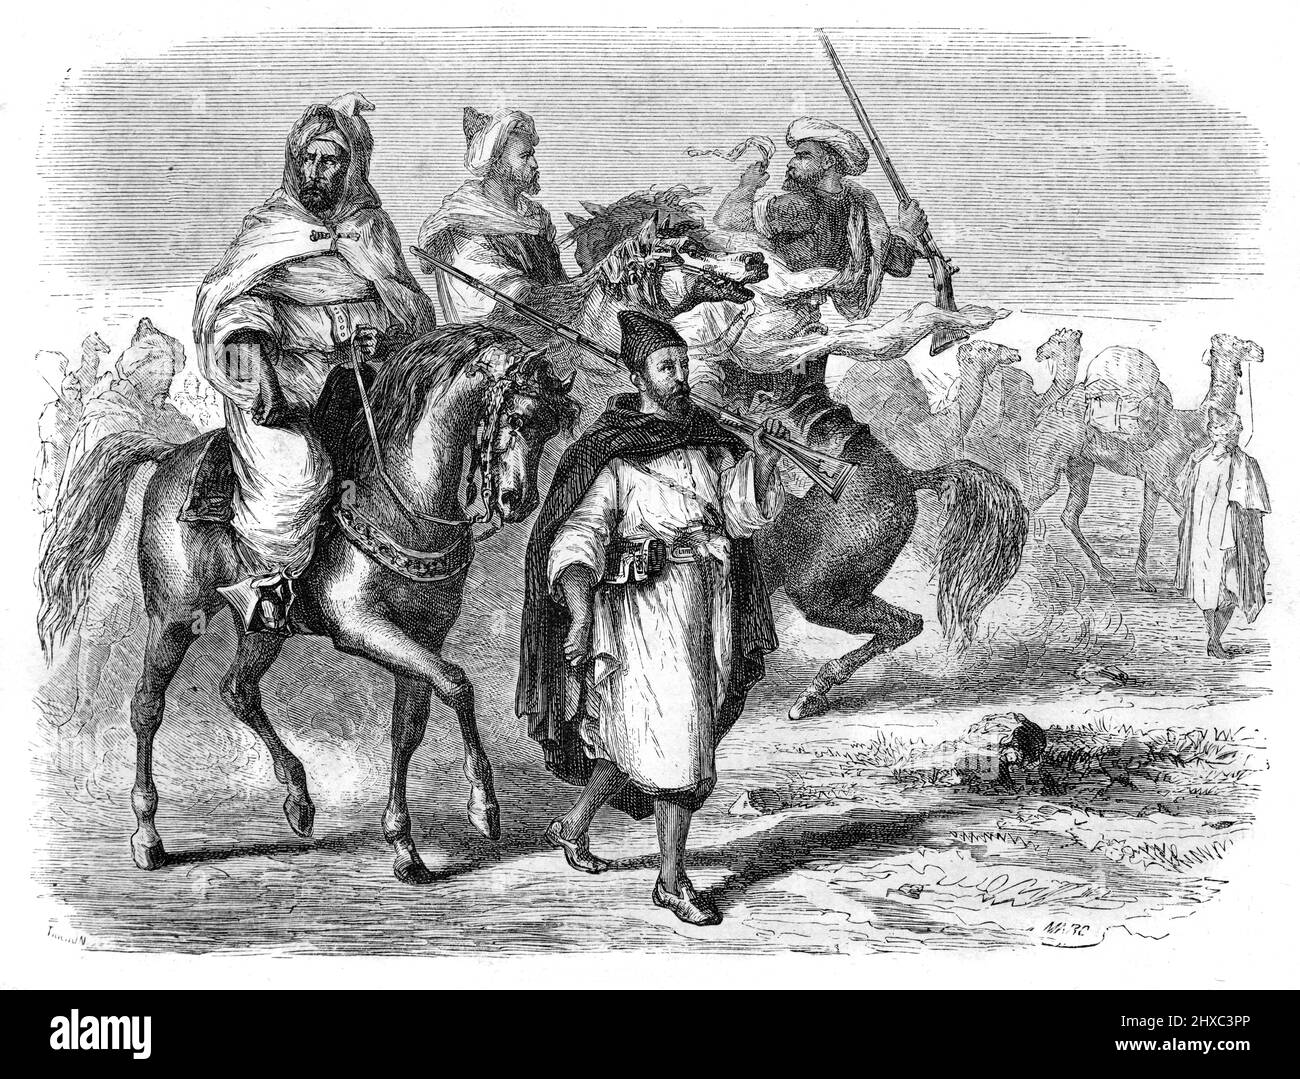 Cavaliers marocains, cavalerie, cavel Caravan et marocains portant un costume marocain traditionnel Moroco. Illustration ancienne ou gravure 1860 Banque D'Images